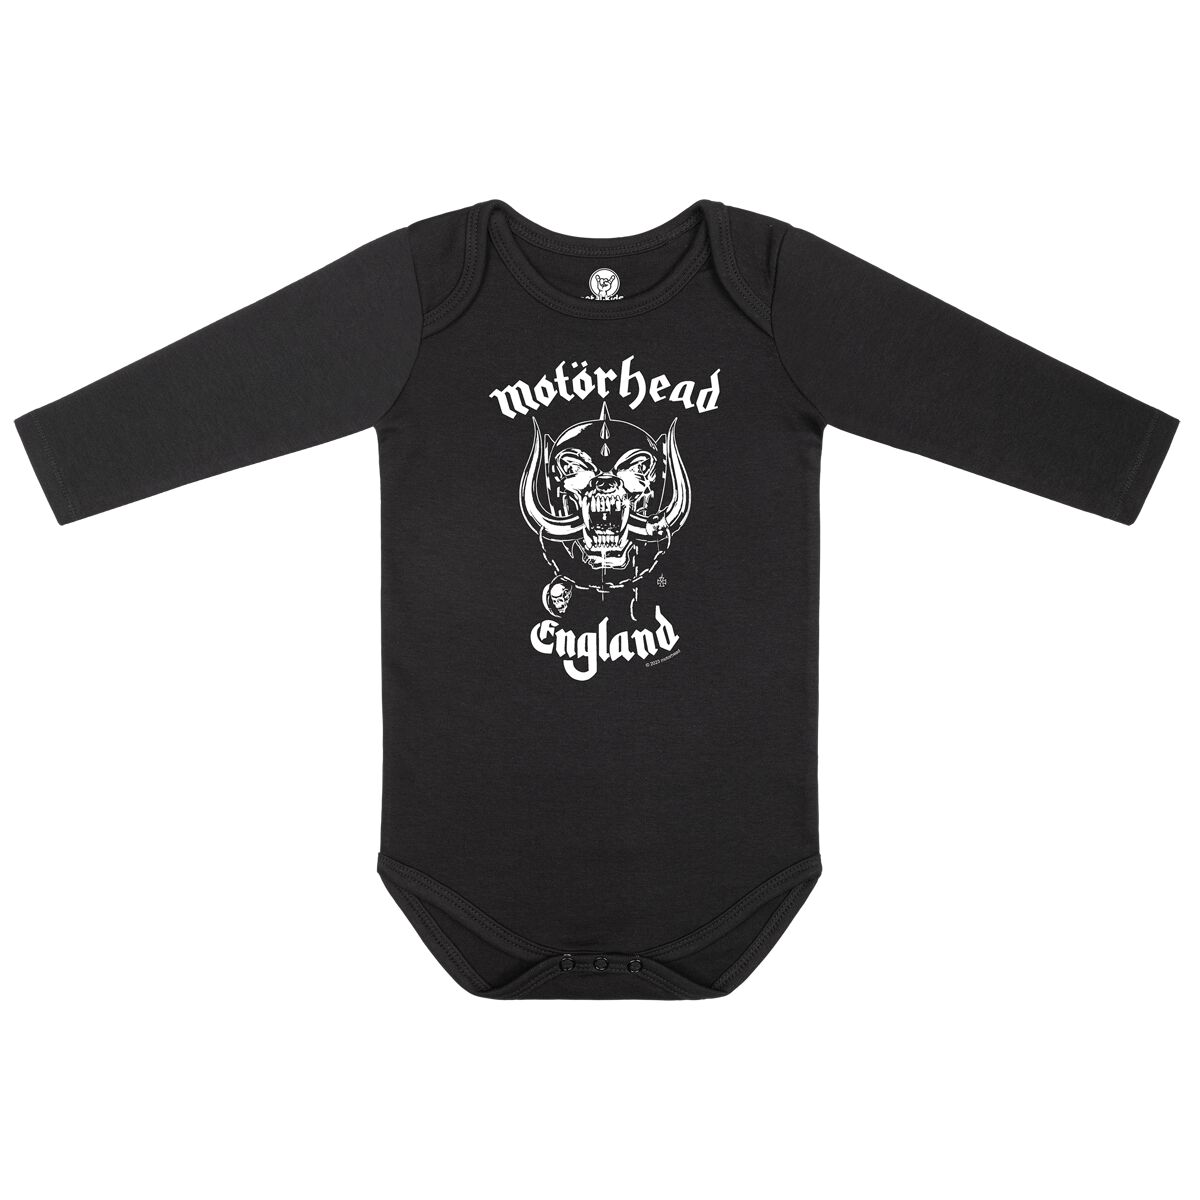 Motörhead Body für Kleinkinder - England Stencil - für Mädchen & Jungen - schwarz  - Lizenziertes Merchandise!